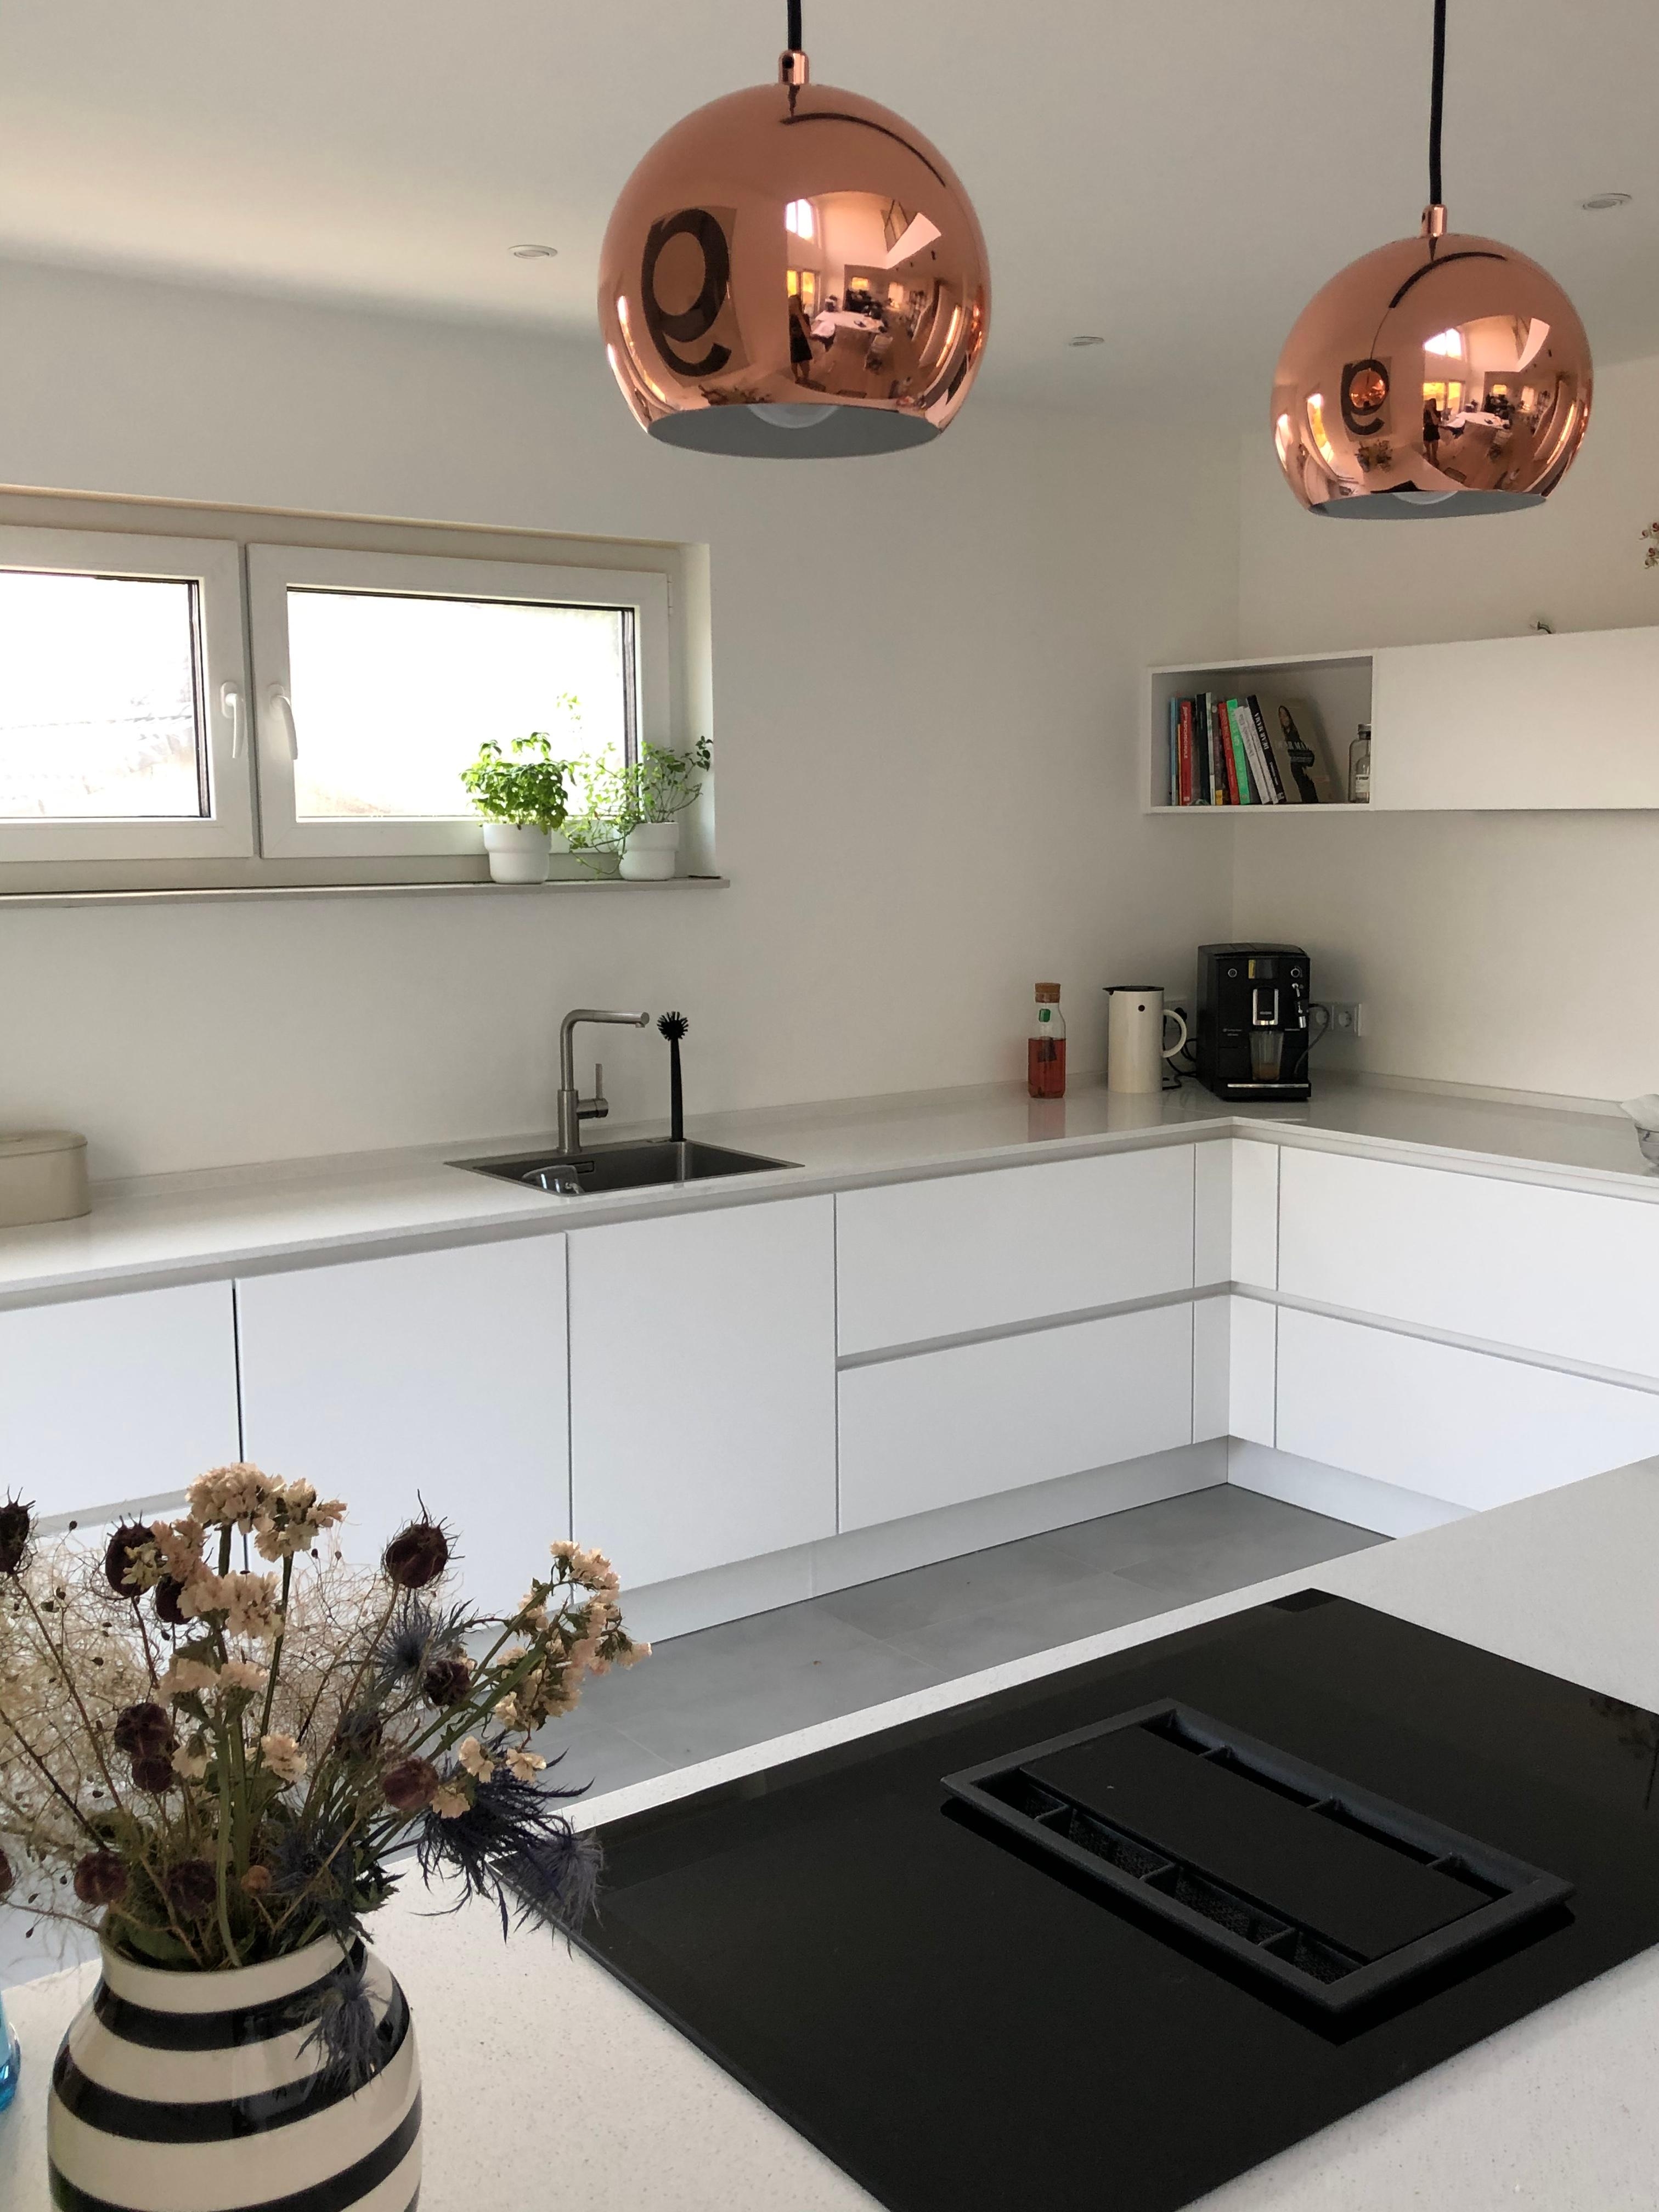 Unsere Küche... ganz in weiß, auch die Arbeitsplatte aus Quarzit. #quarzitarbeitsplatte #kupferlampen #kupfer #skandi